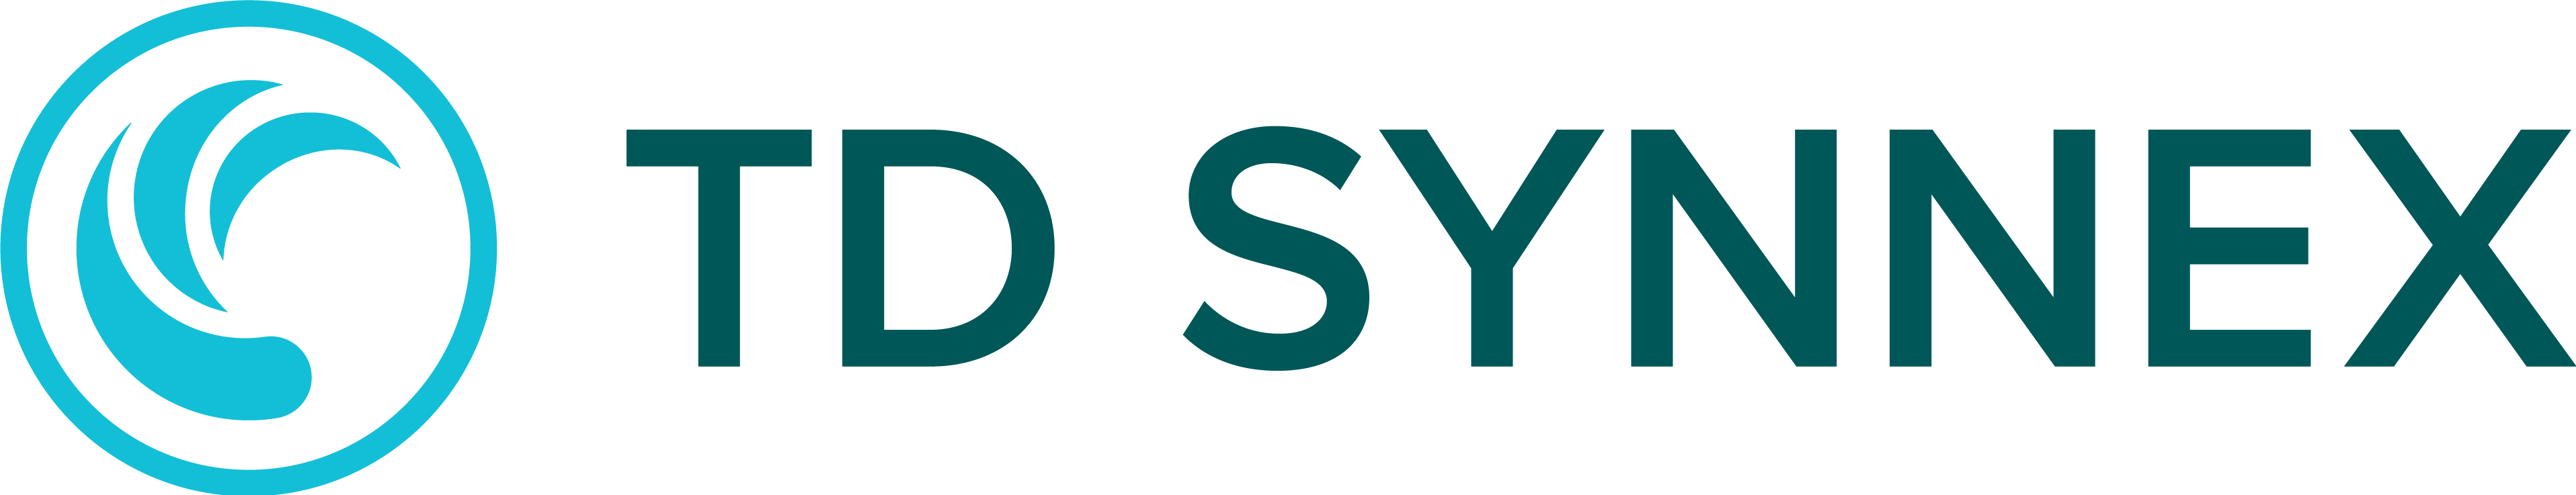 TD SYNNEX Logo